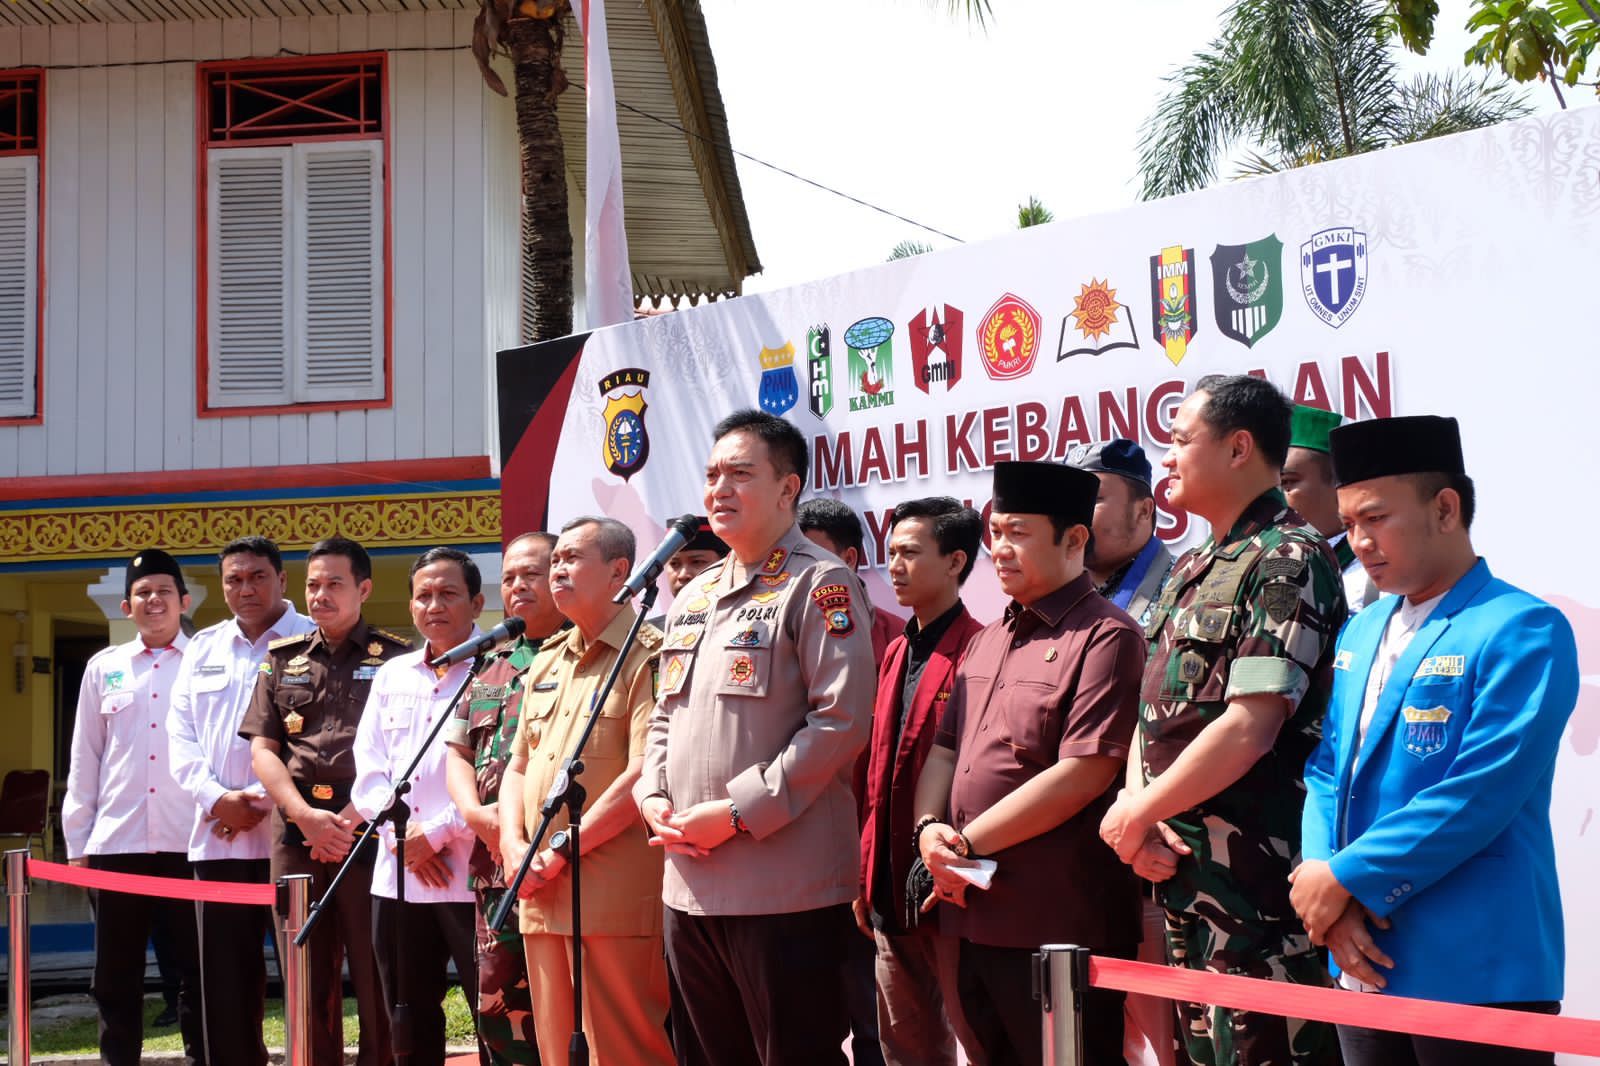 Resmikan Rumah Kebangsaan Cipayung Plus Riau, Irjen Iqbal: Gagasan Pak Jokowi yang Dimotori Kapolri